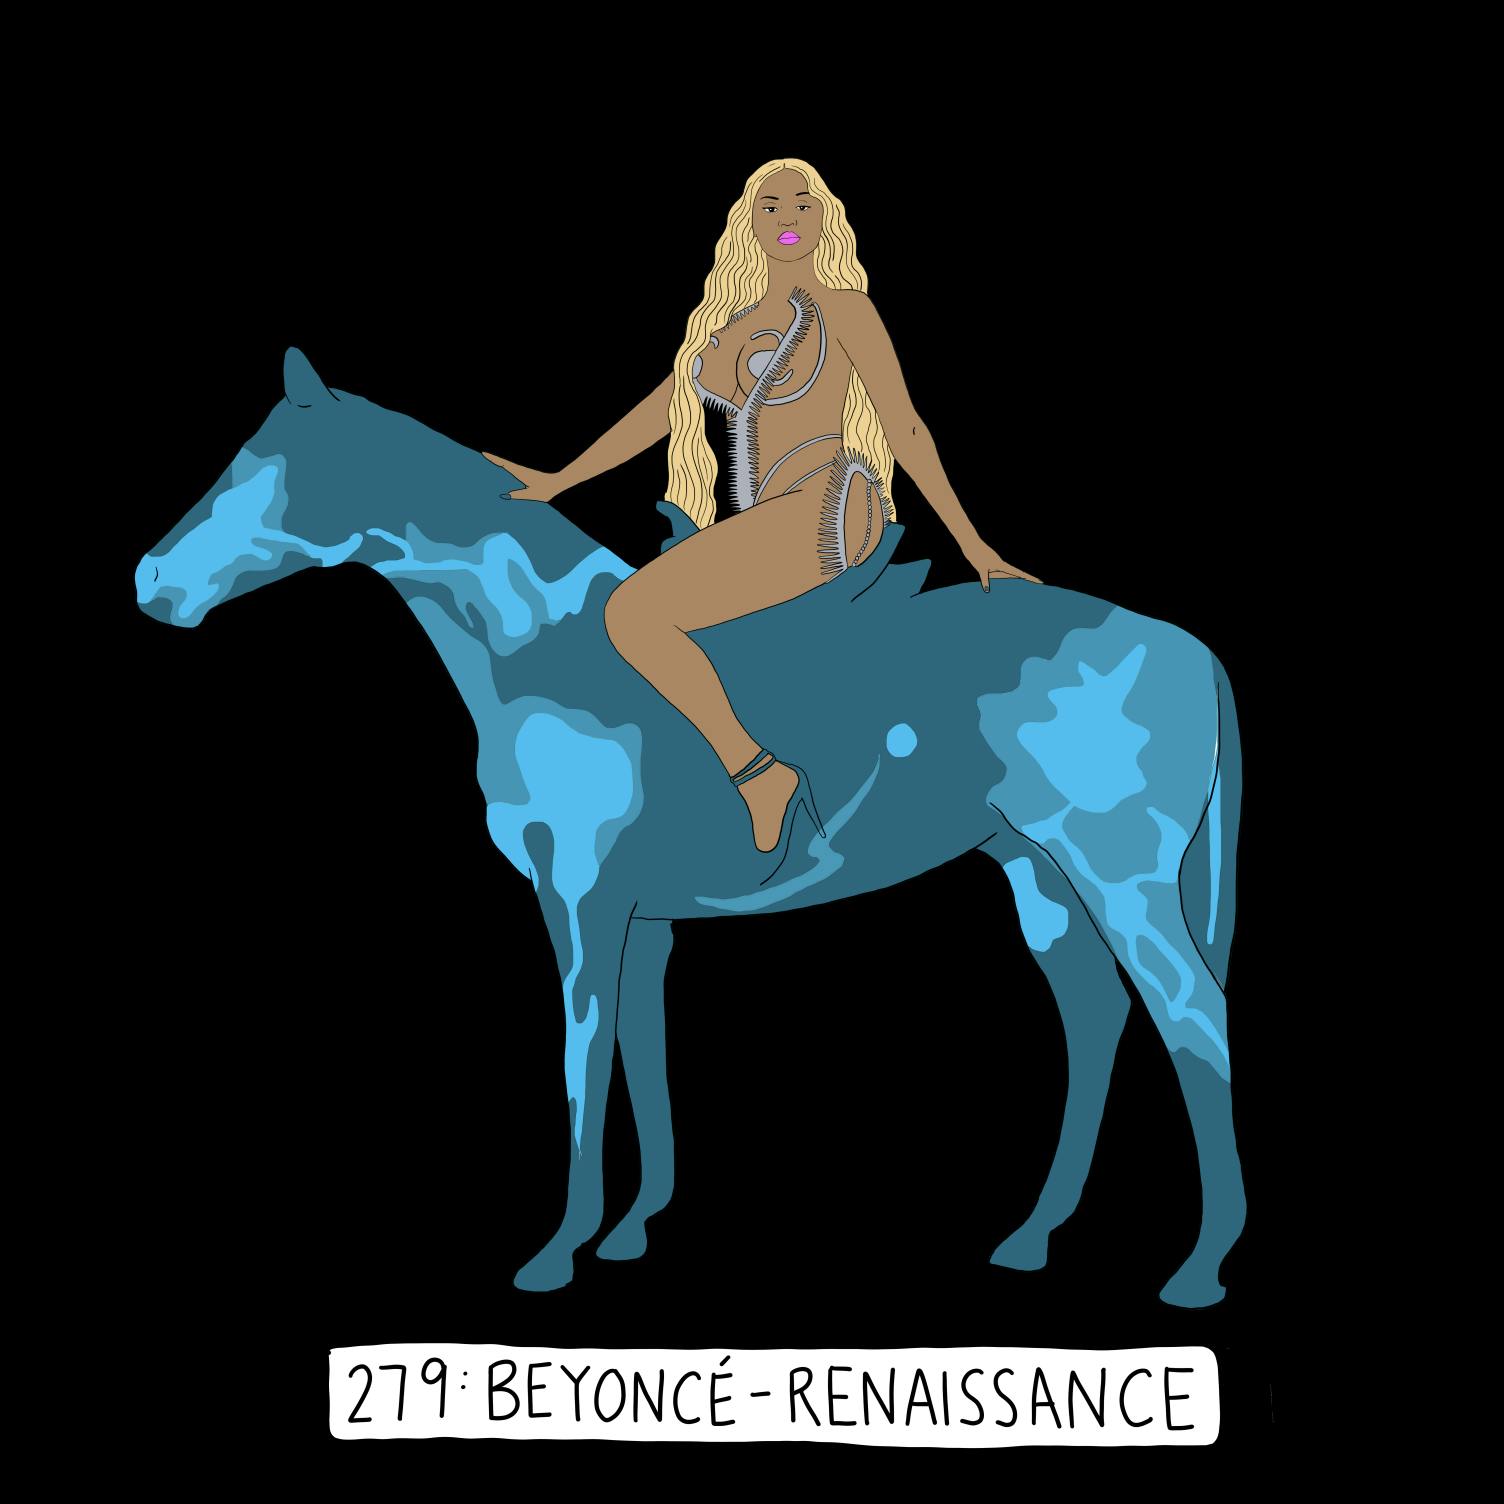 Beyoncé’s ‘Renaissance’ Era